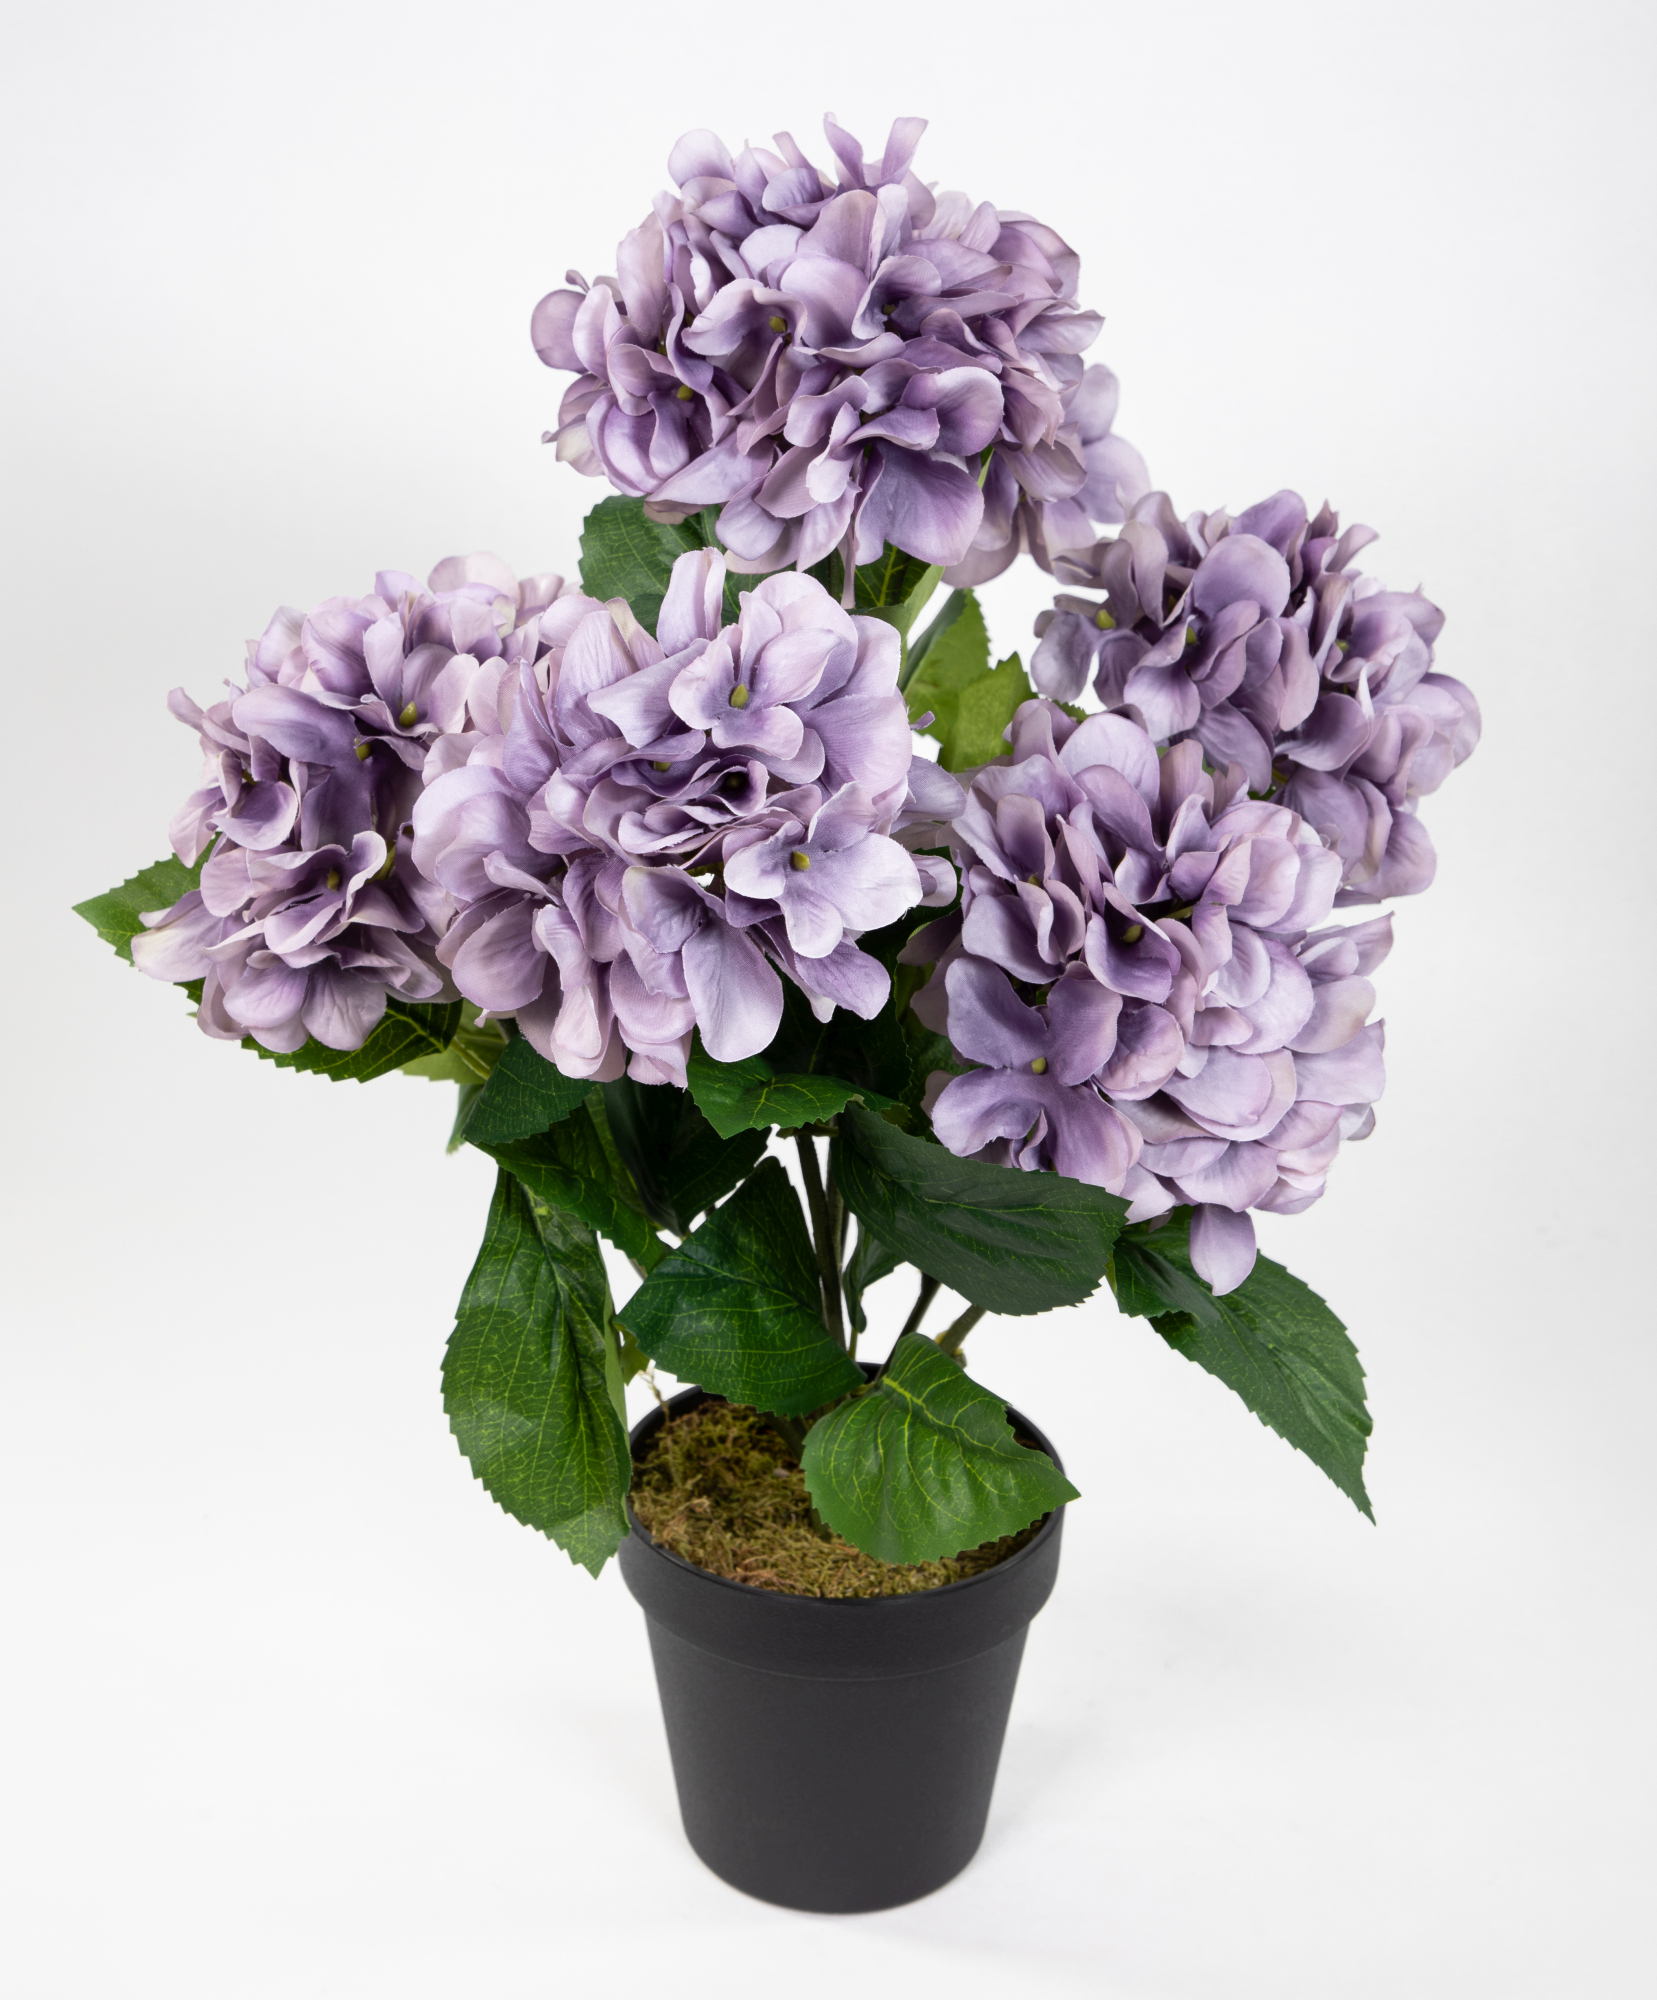 Großer Hortensienbusch 50x38cm lila im Topf GA Kunstpflanze Kunstblumen künstliche Hortensie Pflanze